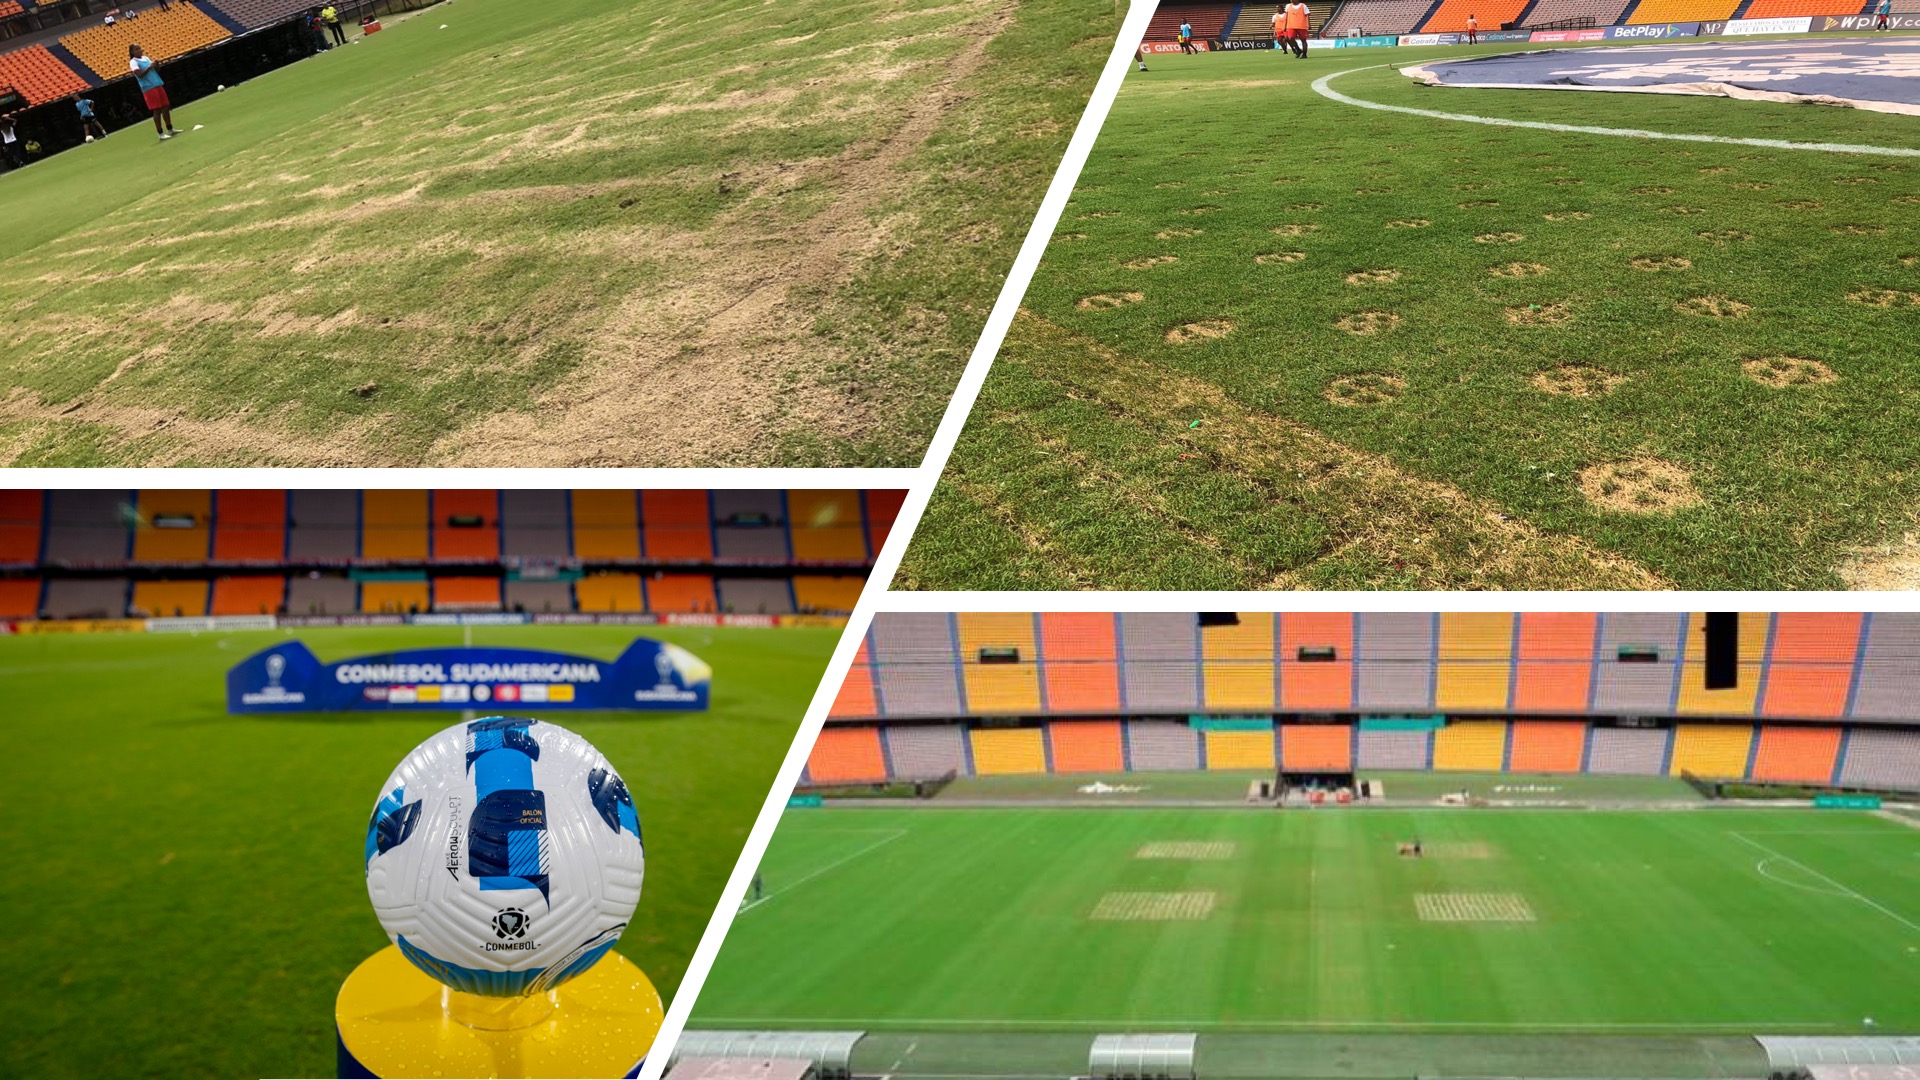 En imágenes: con lluvia y desgaste en la grama, volvió el fútbol al estadio Atanasio Girardot de Medellín